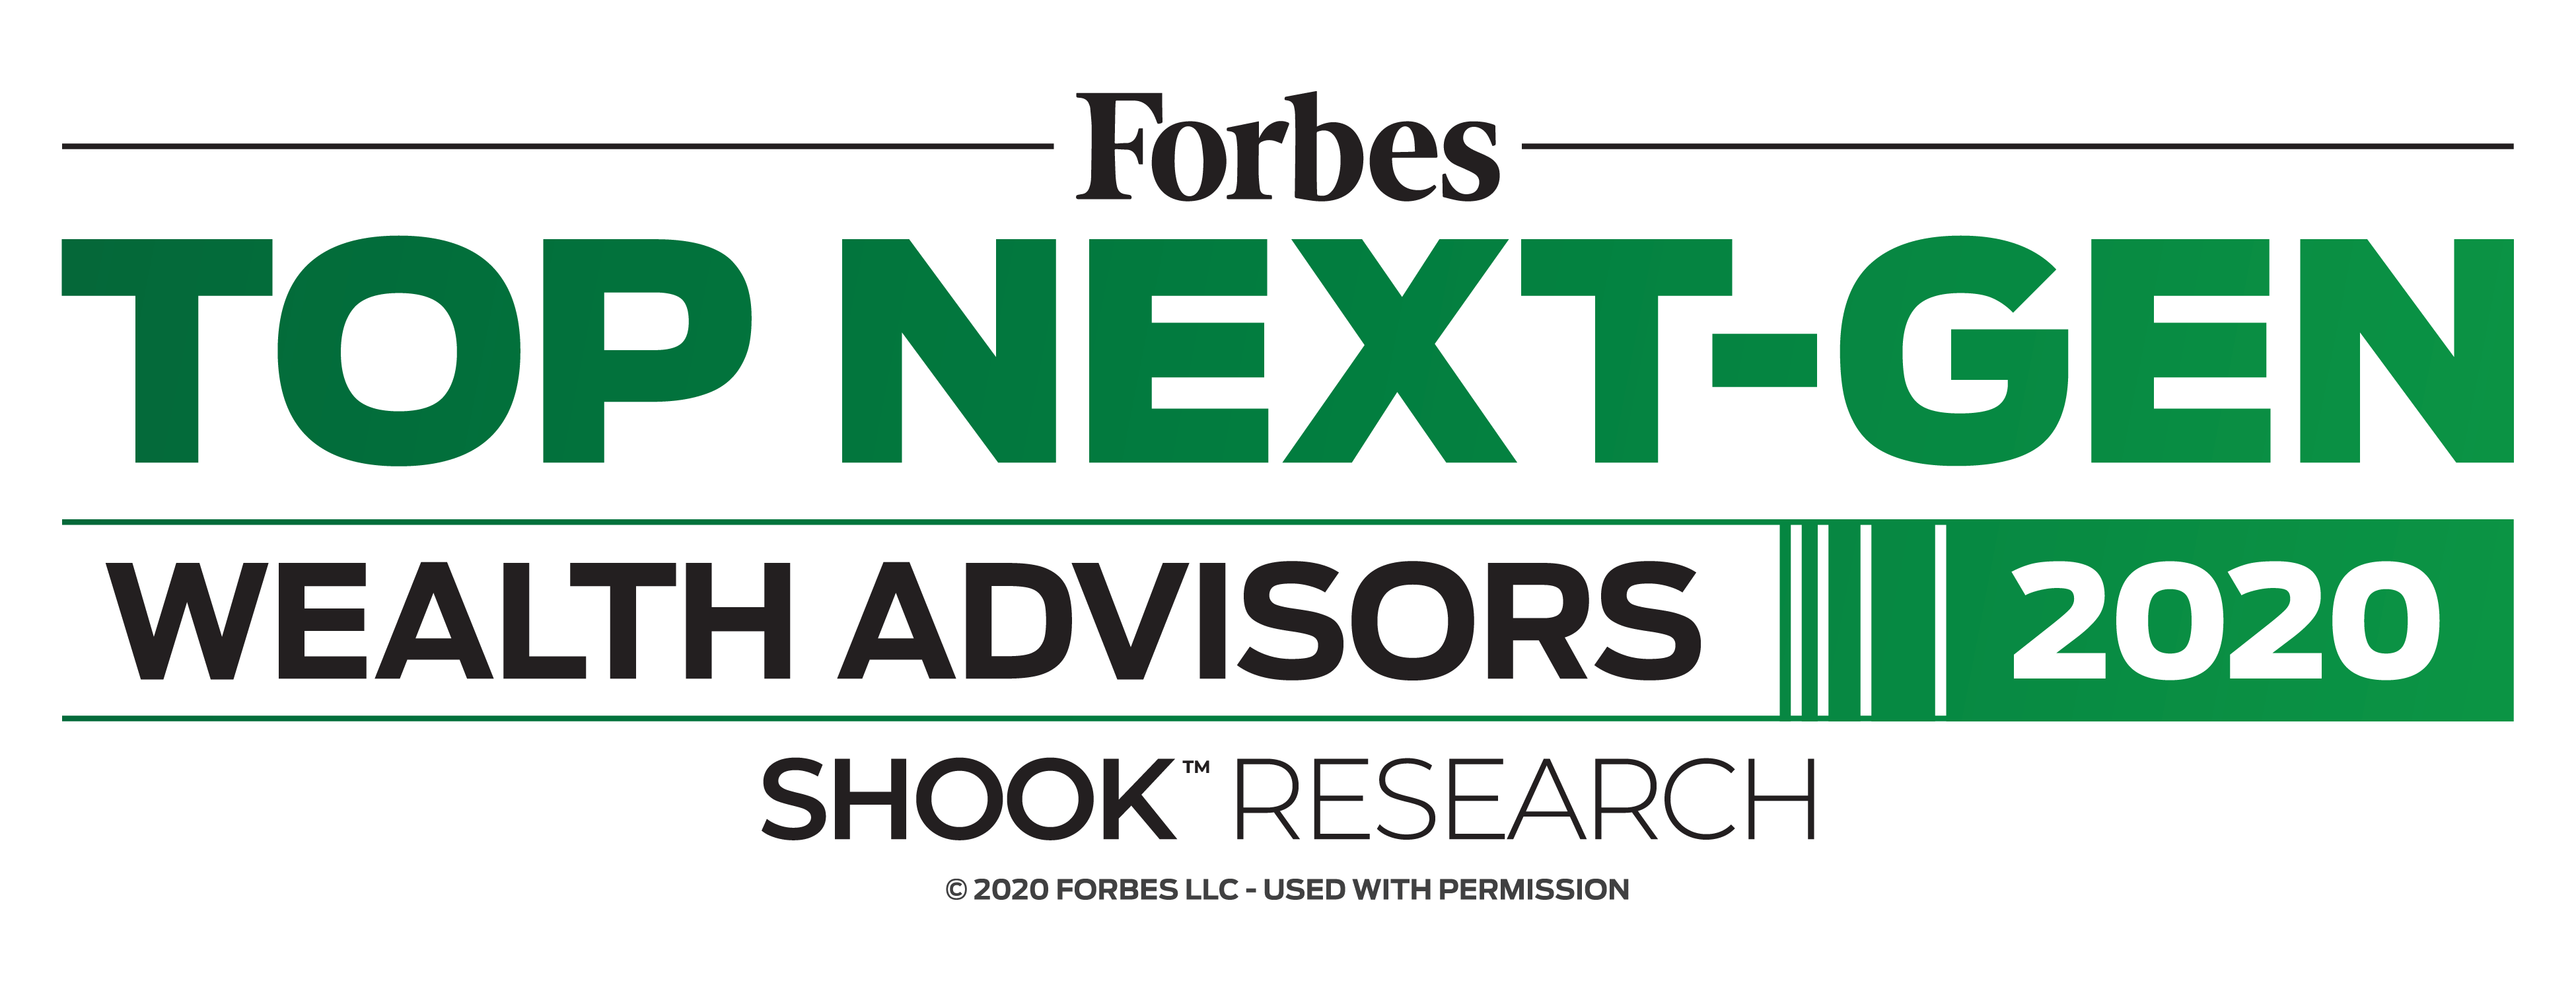 Forbes Top Next Gen Wealth Advisors 2020